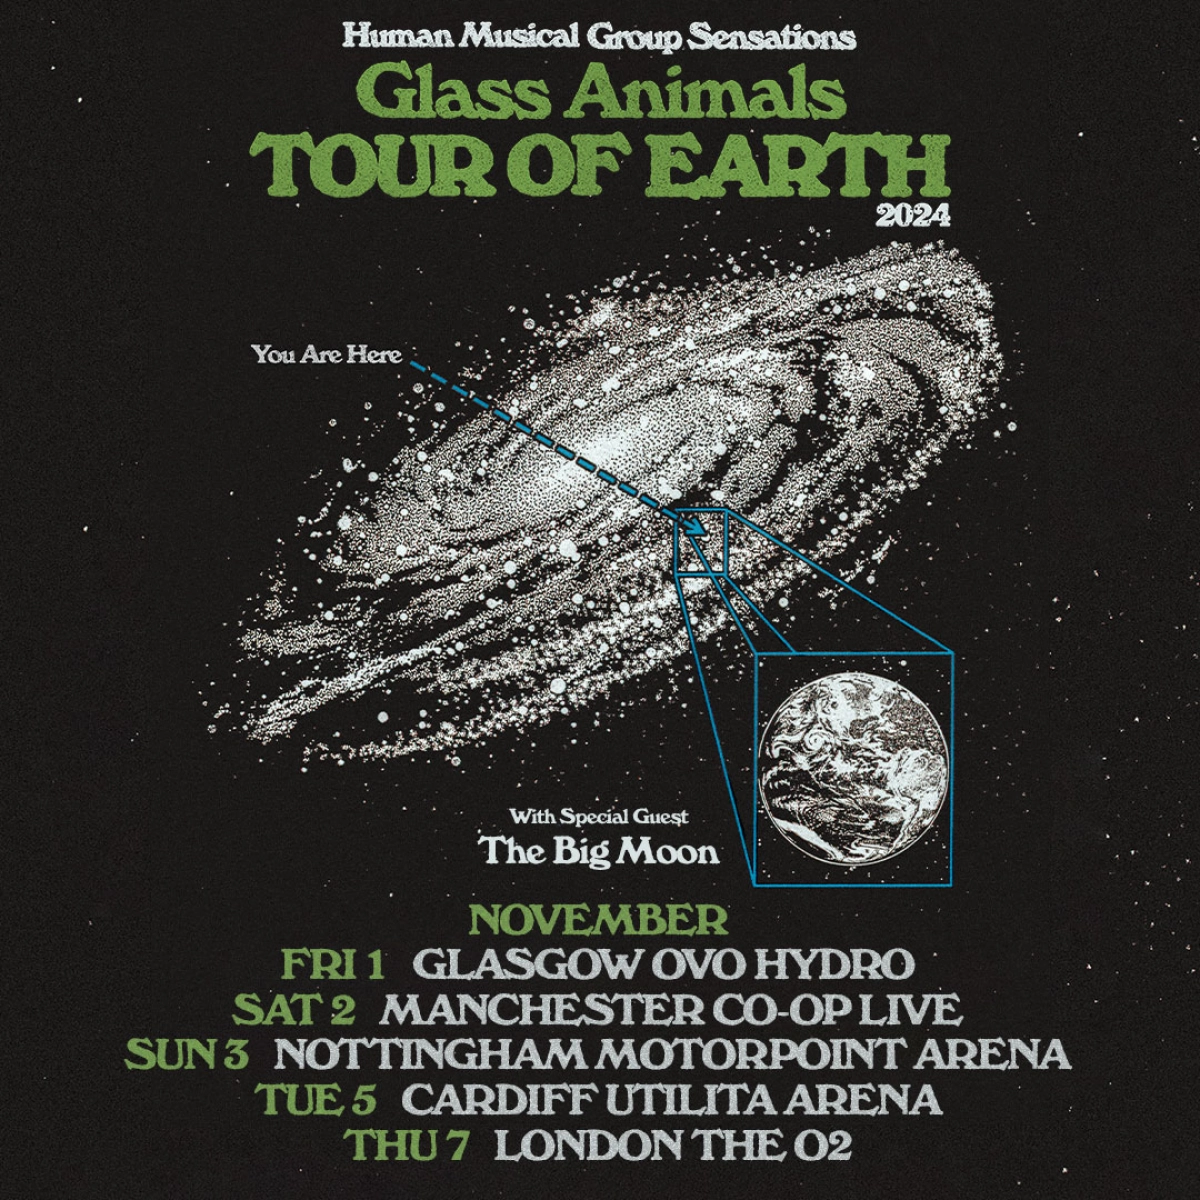 Billets Glass Animals (Co-op Live - Manchester)